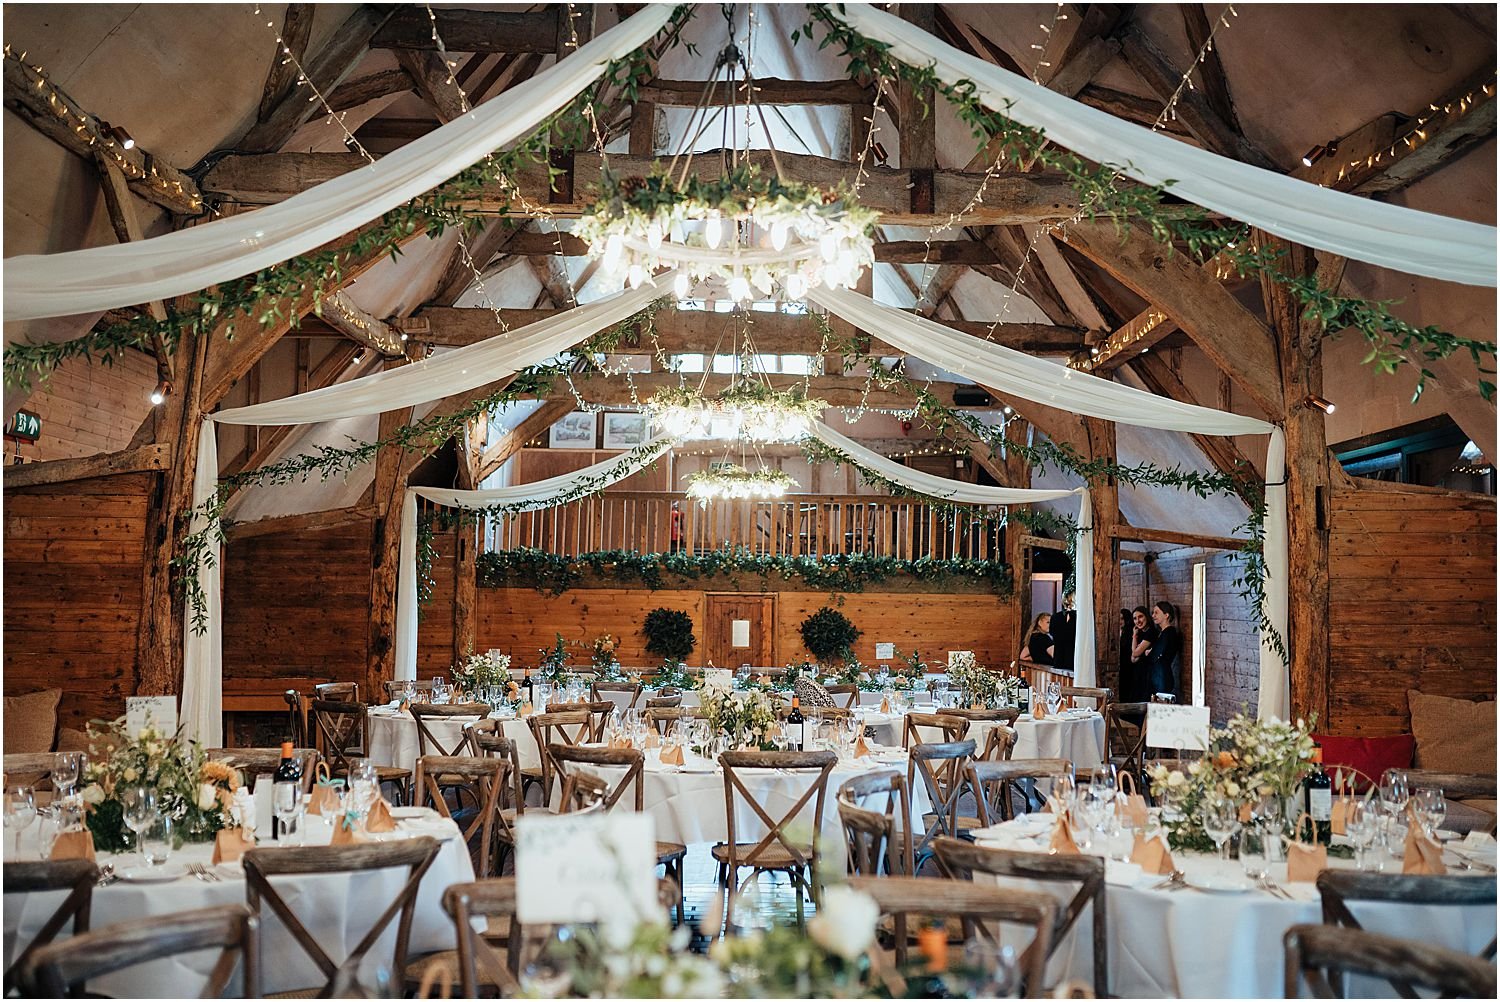 Lains Barn Wedding Reception